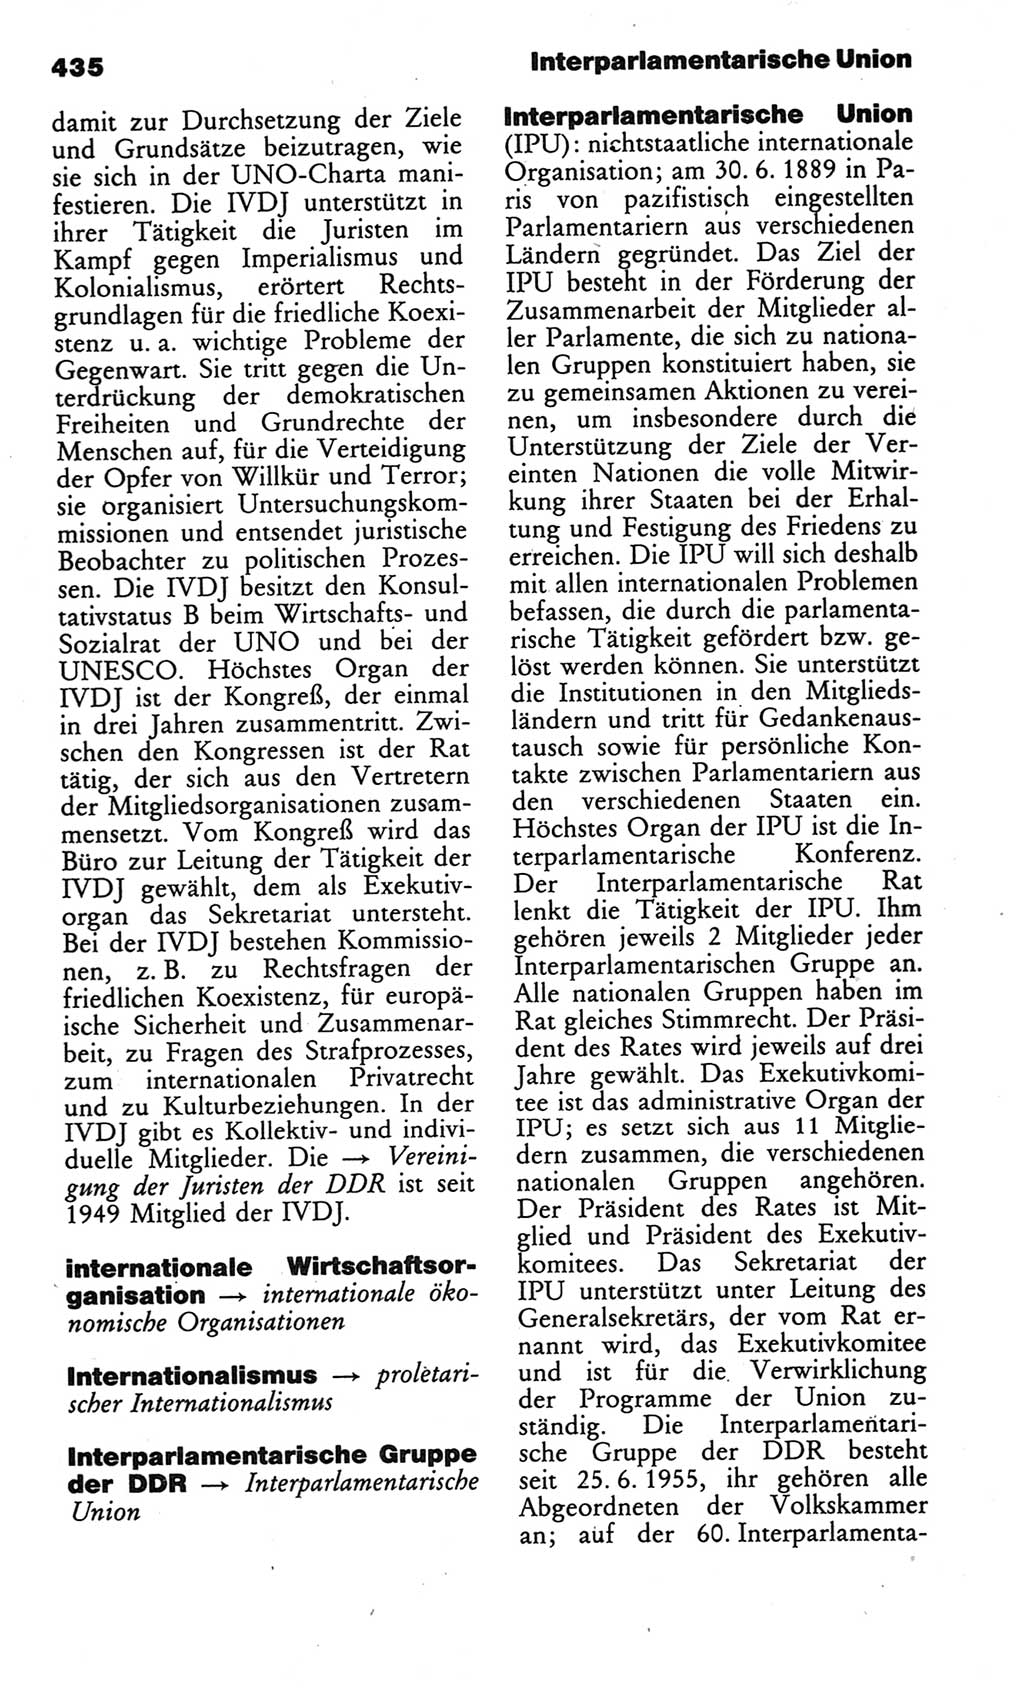 Kleines politisches Wörterbuch [Deutsche Demokratische Republik (DDR)] 1986, Seite 435 (Kl. pol. Wb. DDR 1986, S. 435)